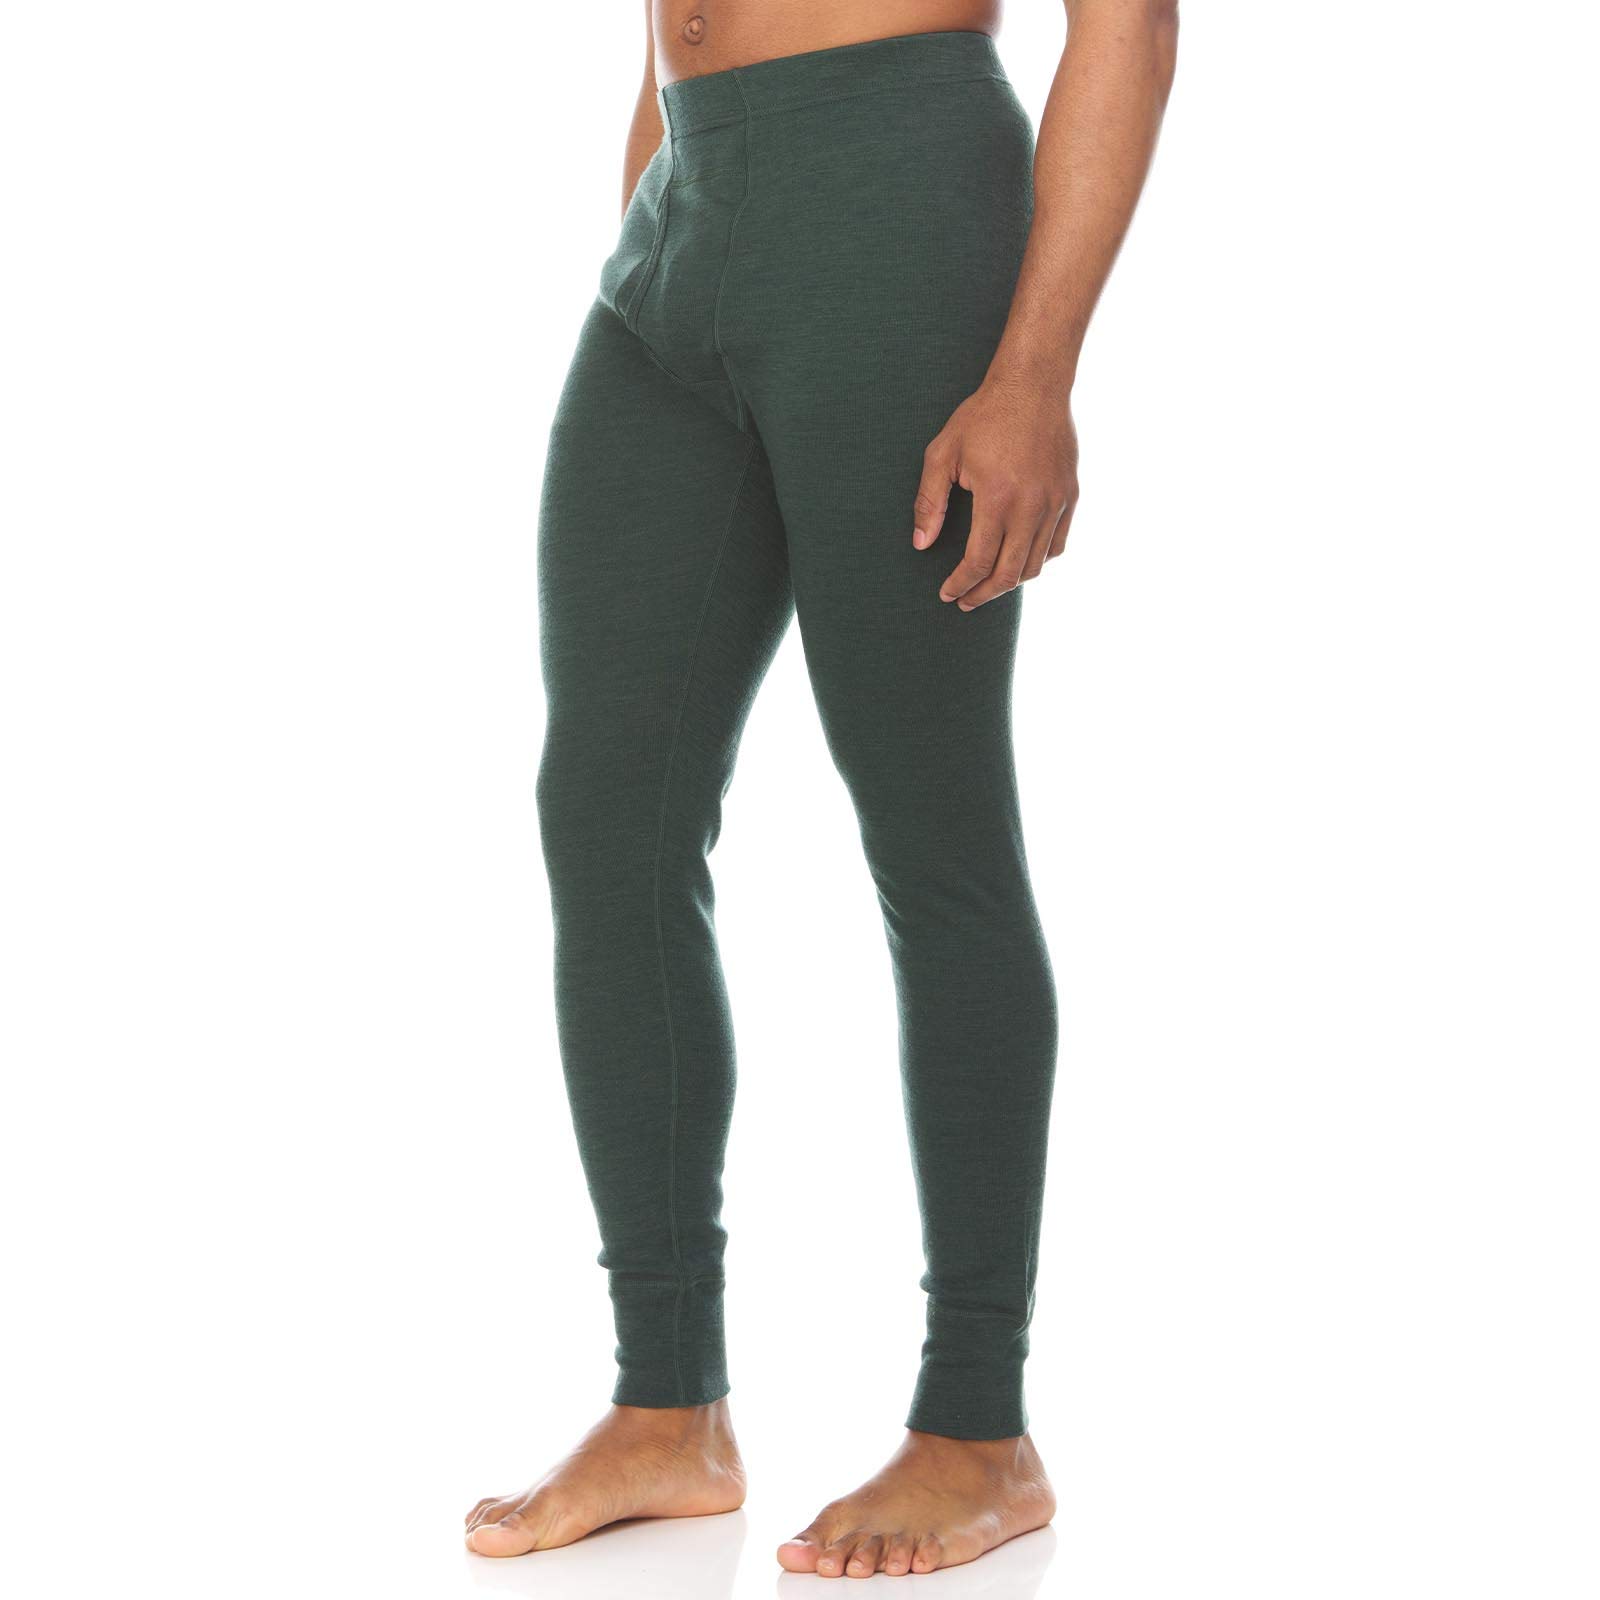 Minus33 Kancamagus Men’s Midweight Base Layer Pants - 100% Merino Wool Bottoms - Multi Use Long Johns - Thermal Underwear